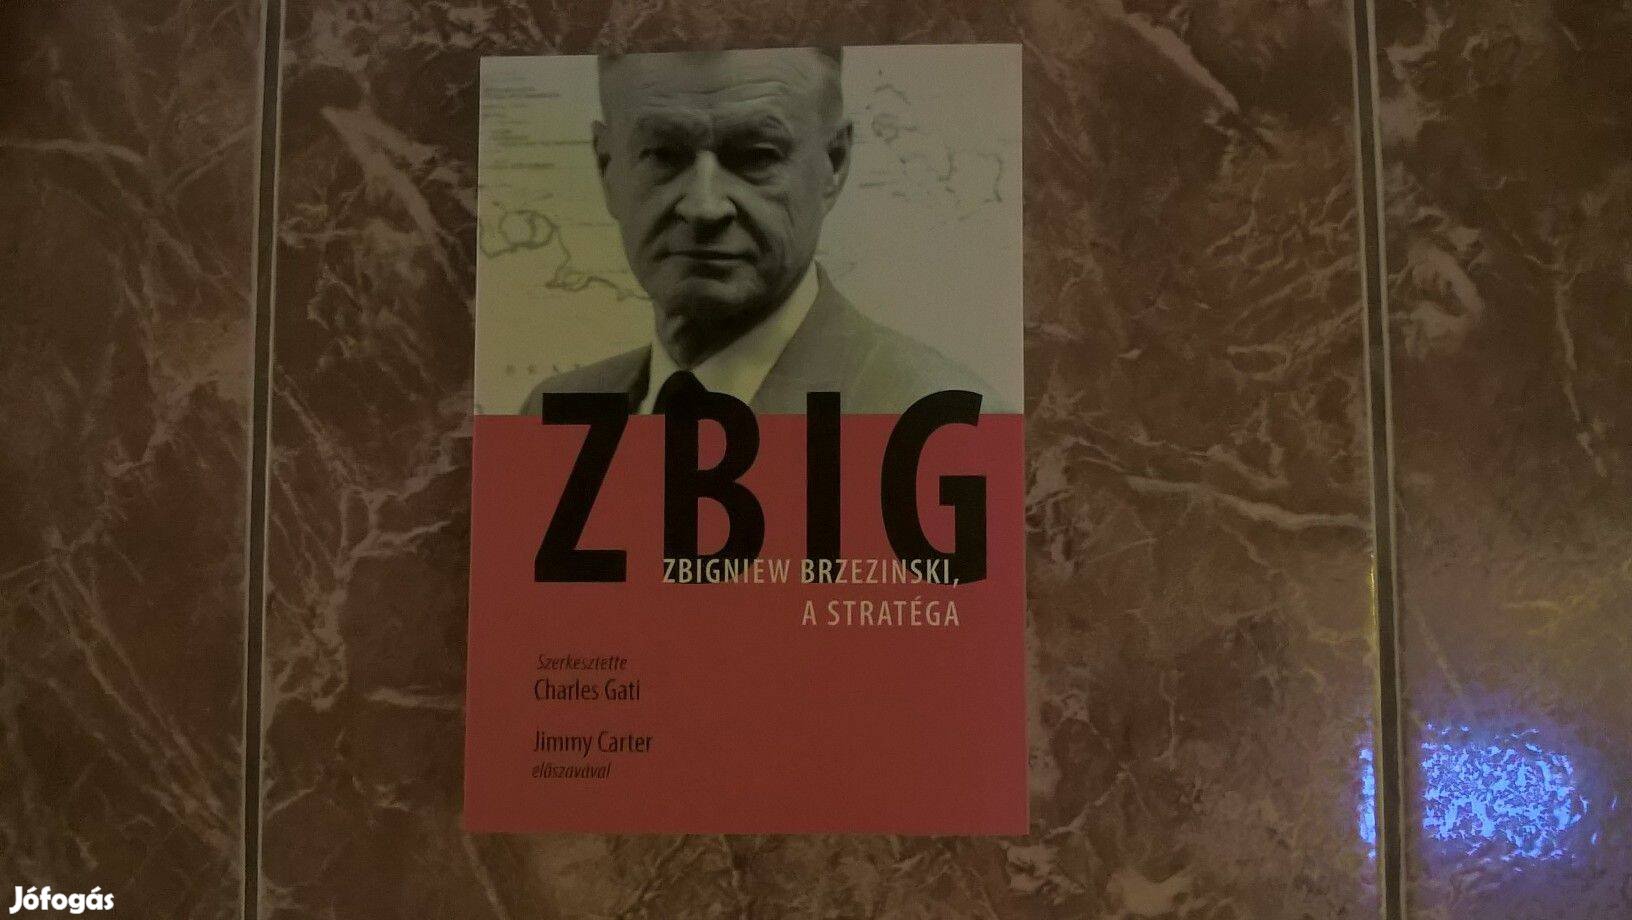 Zbig - Zbigniew Brzezinski